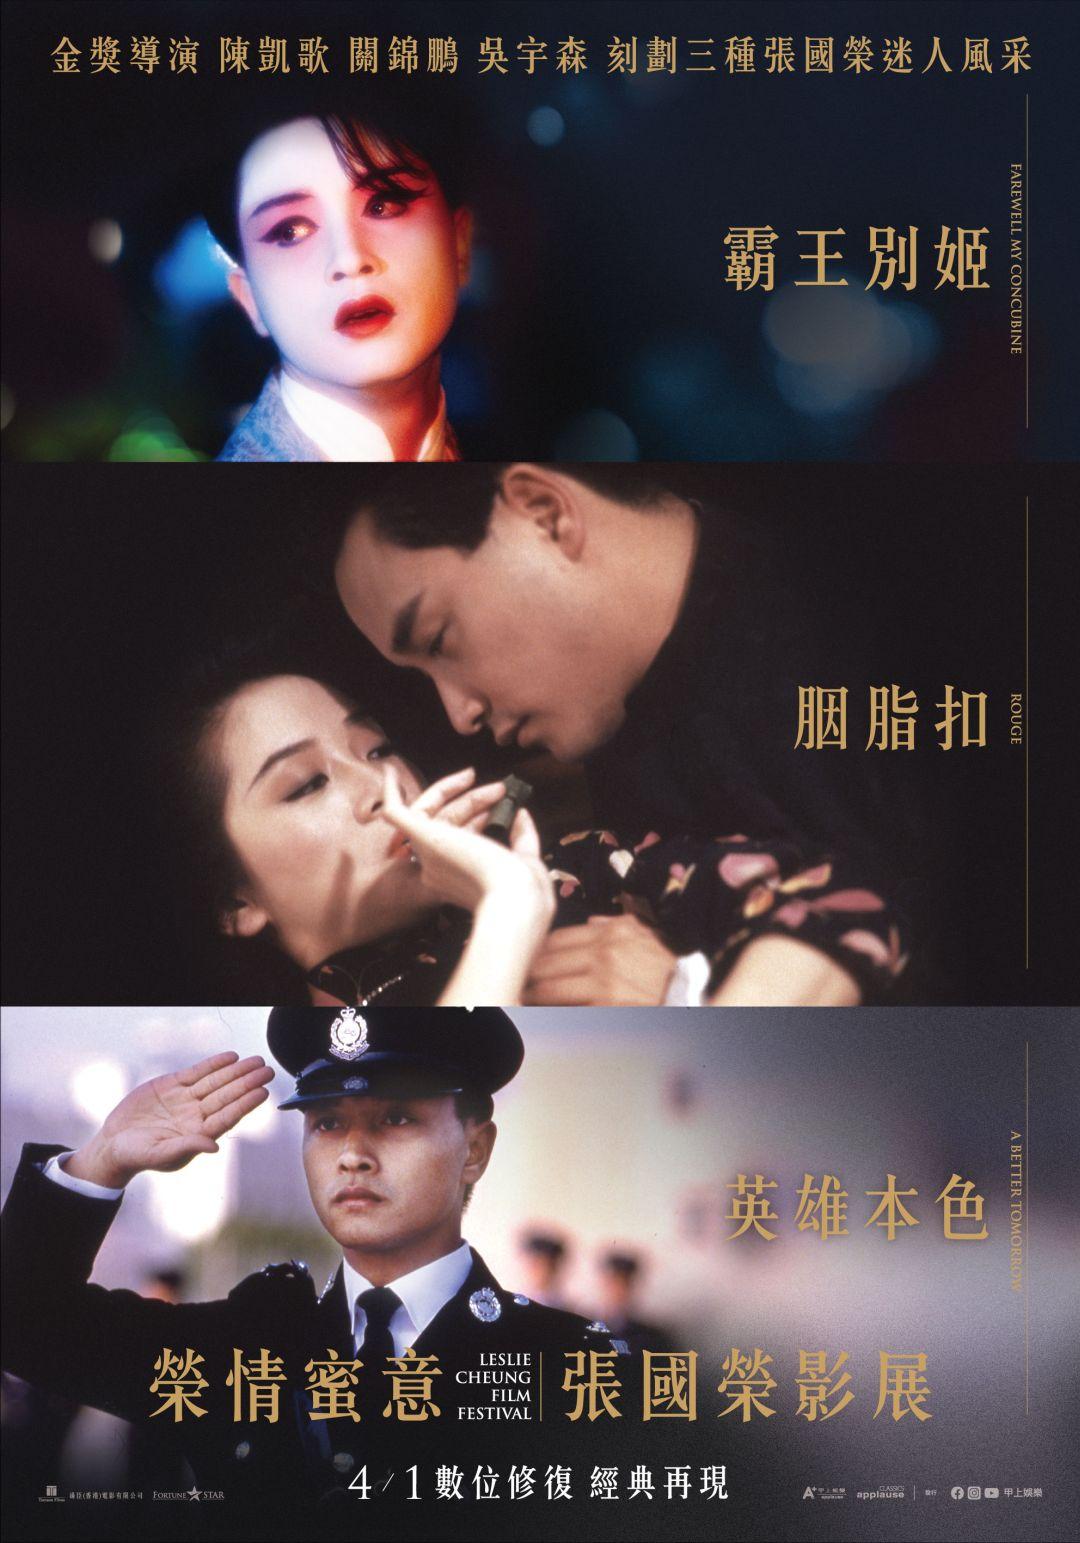 榮情蜜意張國榮影展Leslie Cheung Film Festival